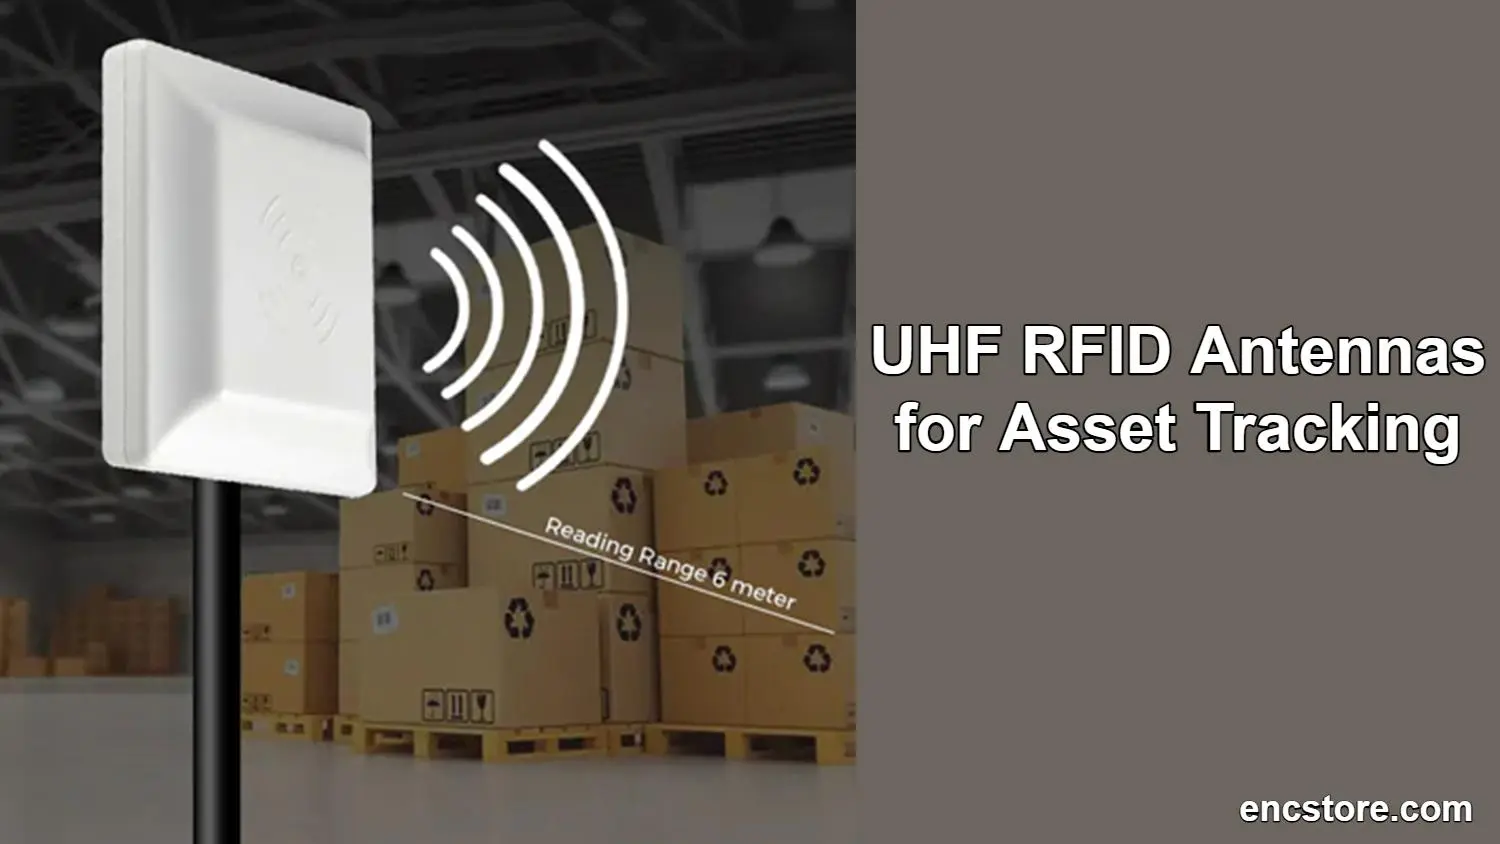 UHF RFID Antennas for Asset Tracking